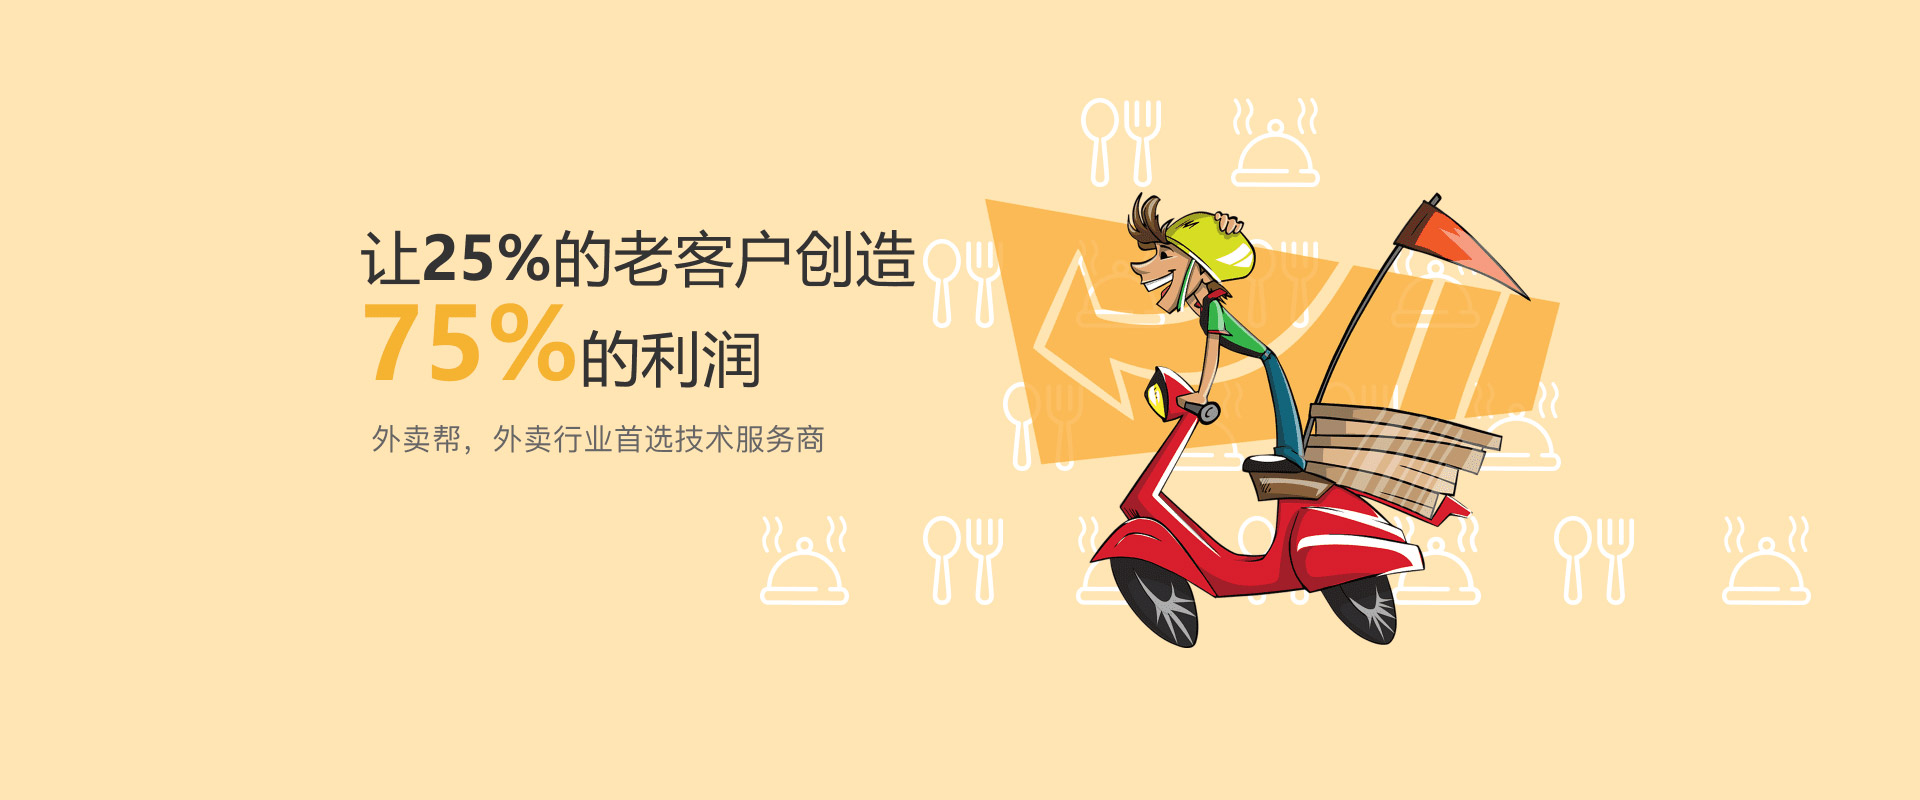 315晚会曝光后，多家电商平台下架老坛酸菜... 来自刘江说法 - 微博